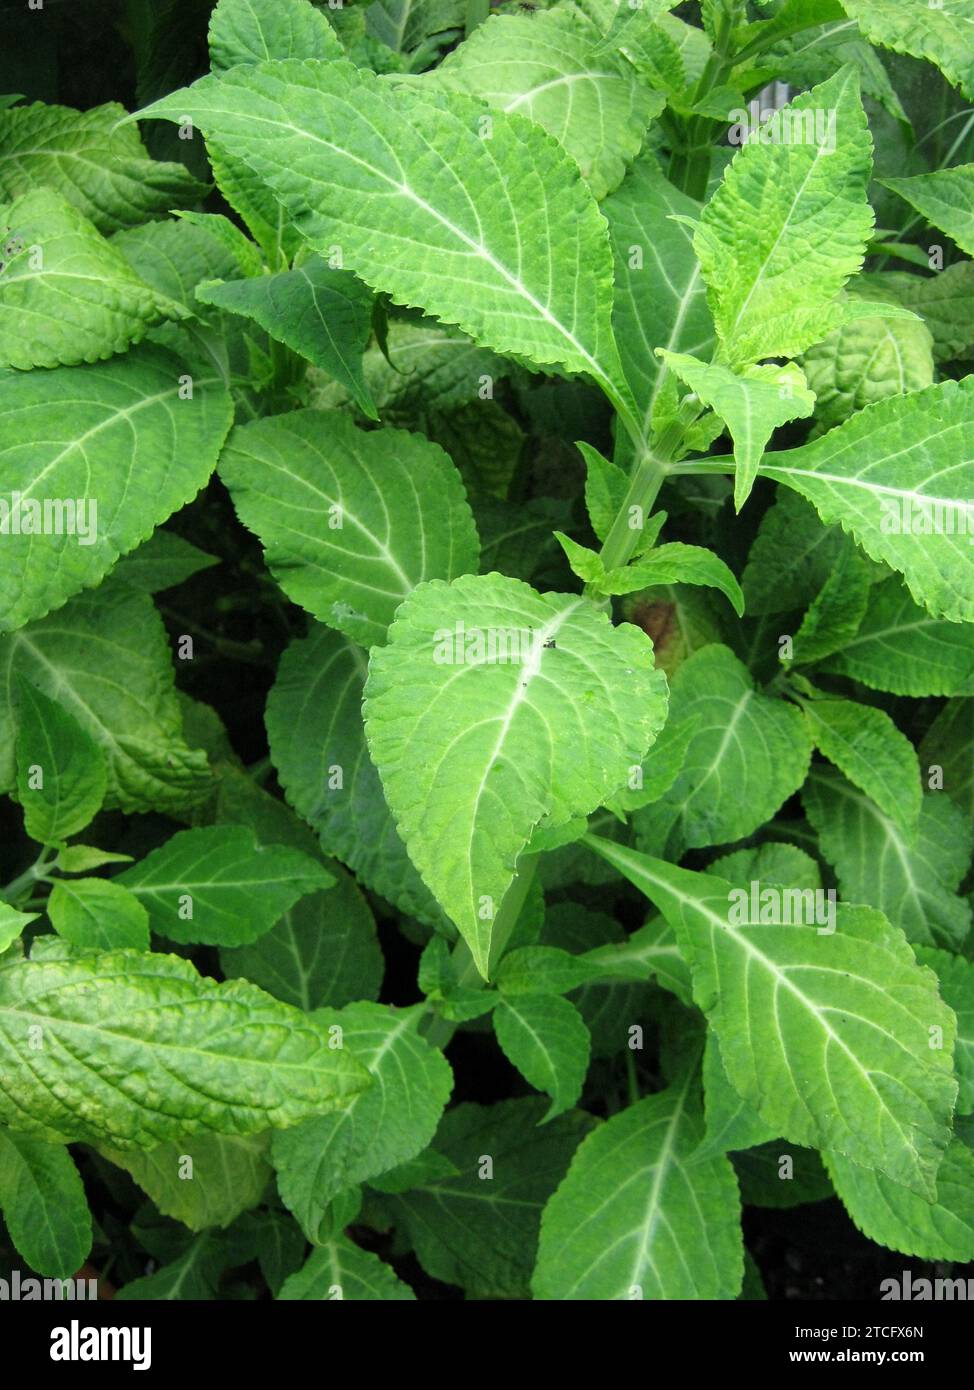 Salvia Divinorum 'Salvia' Stock Photo